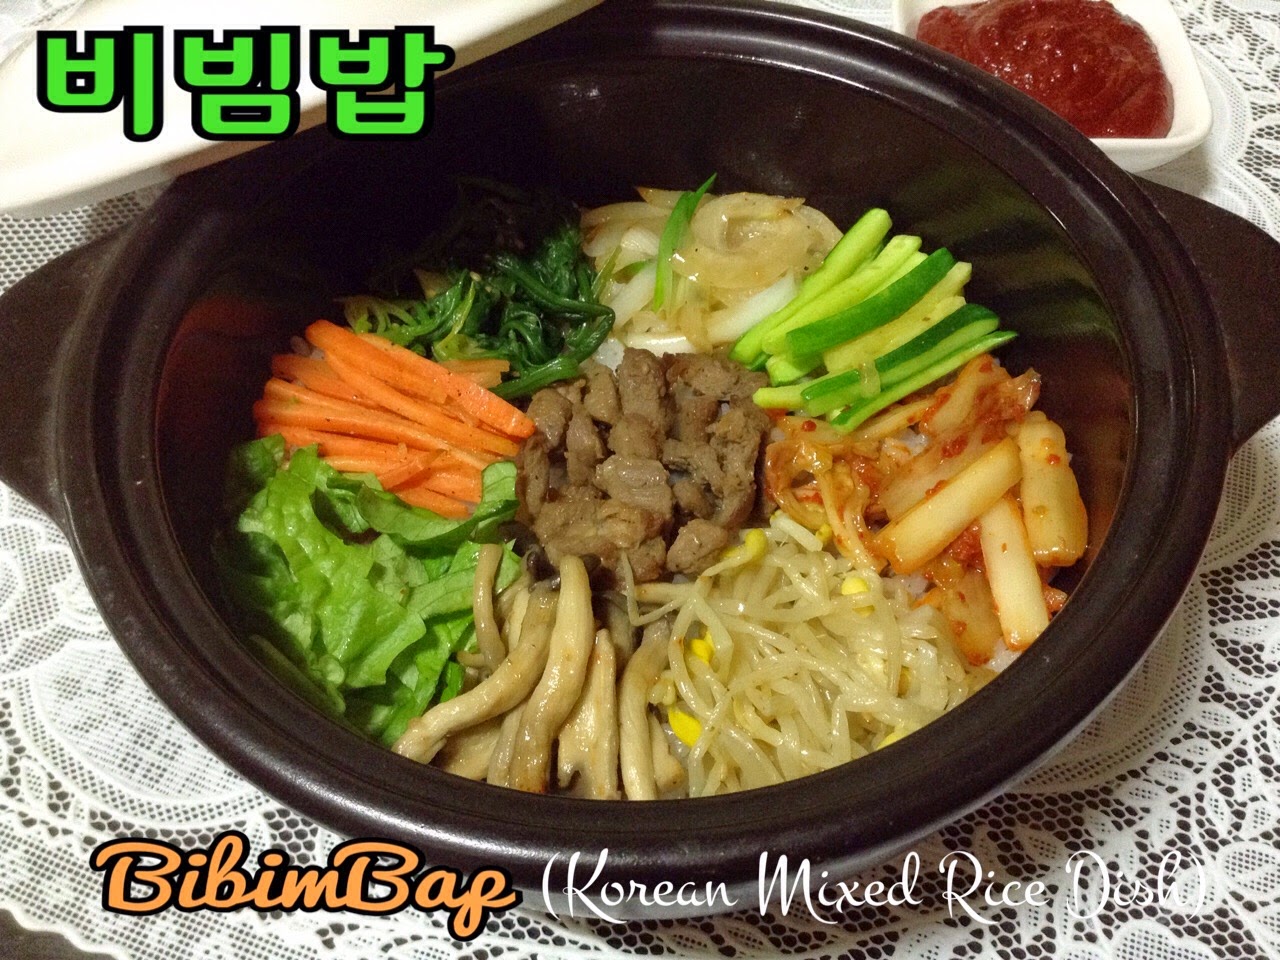 Korean Mixed Rice Dish